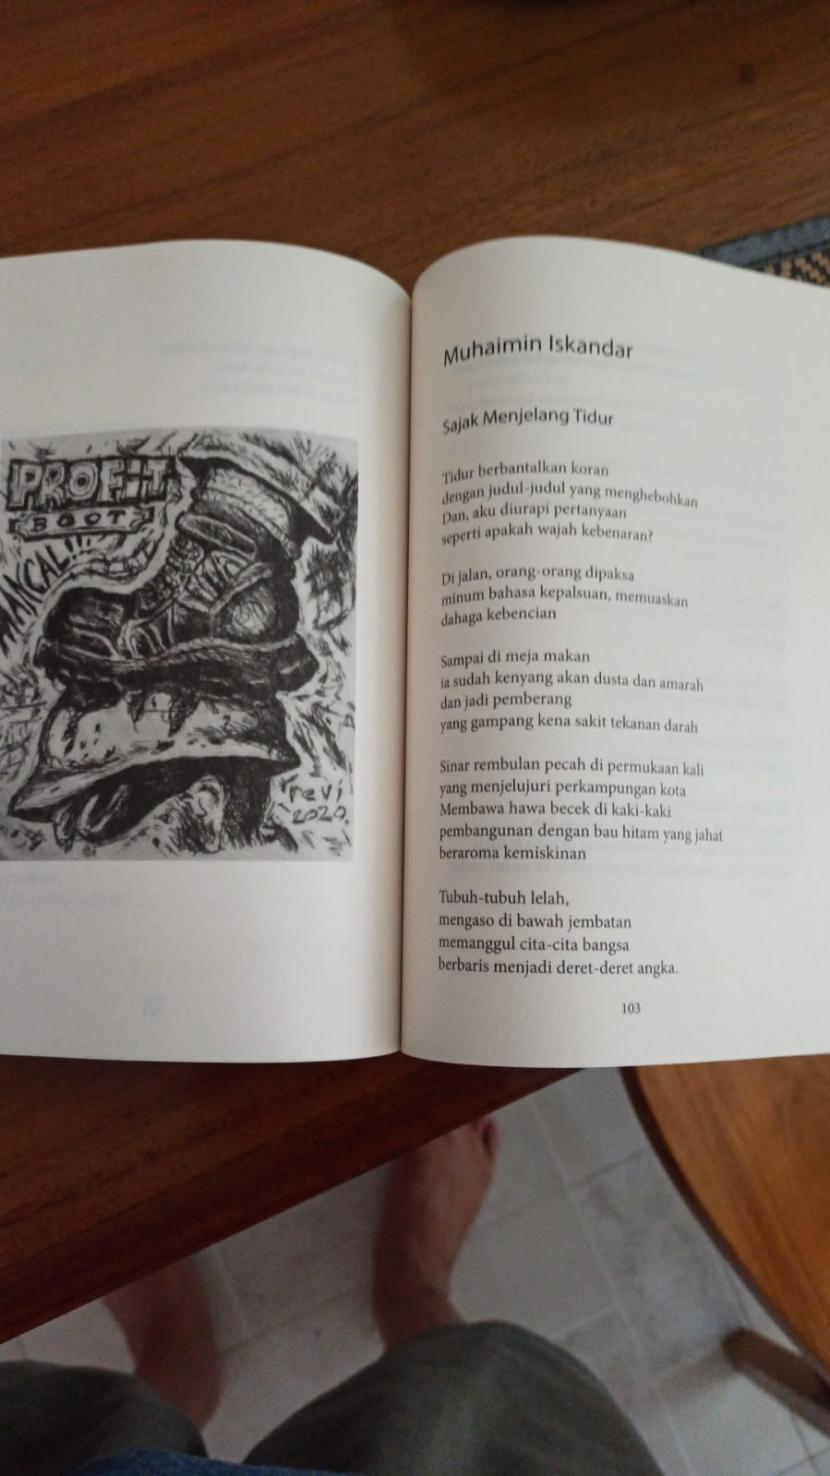 Puisi Muhaimin Iskandar dalam Antologi Darah Juang.